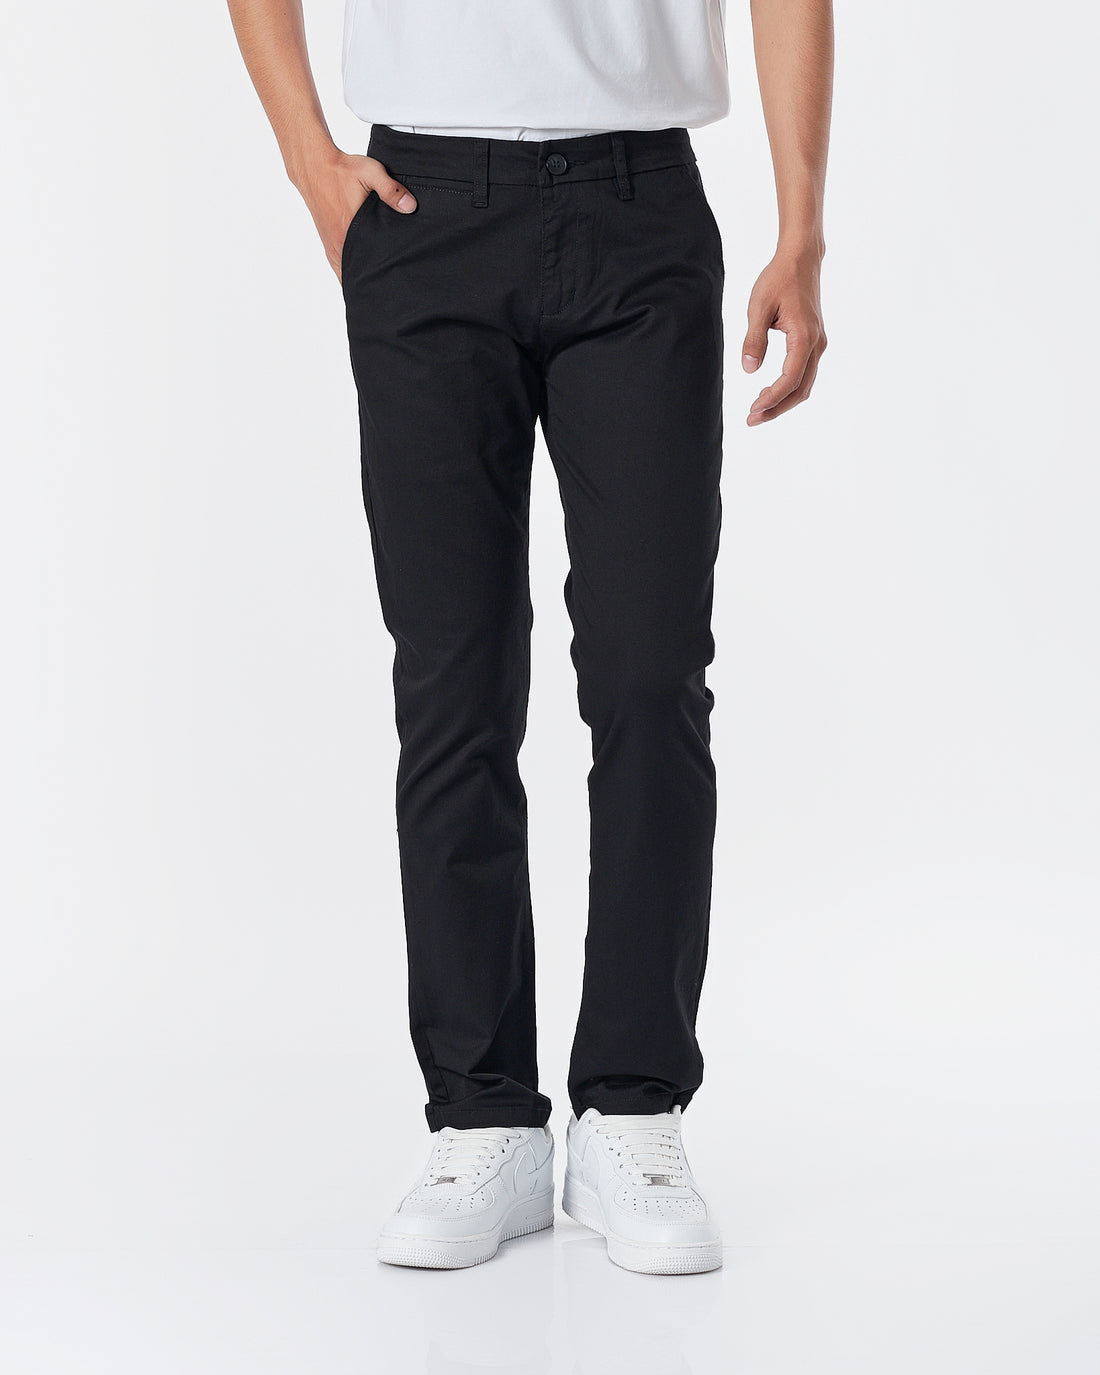 LAC Plain Color Men Black Khaki Pants 22.90